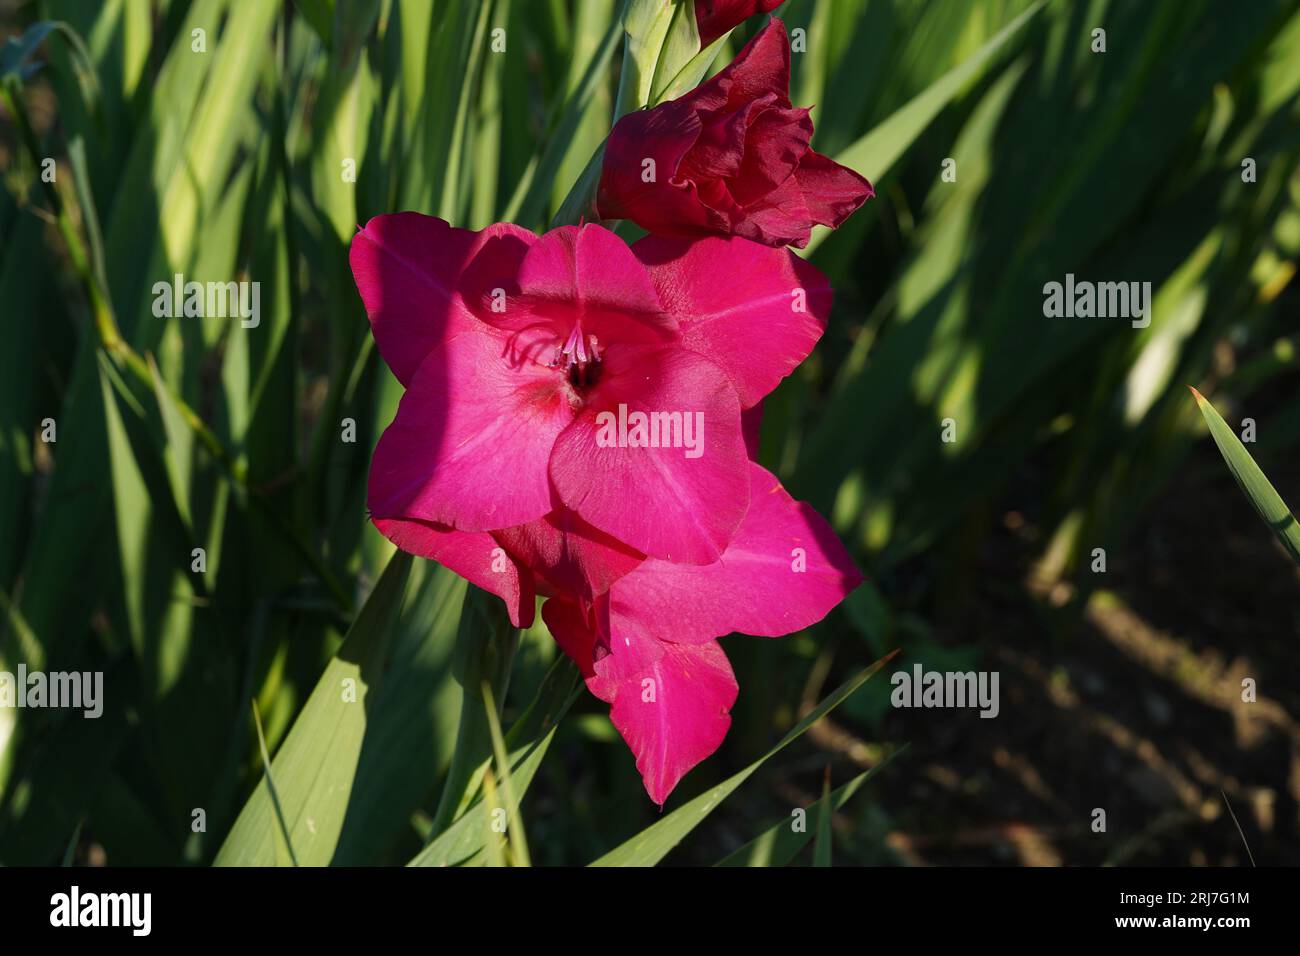 Gladiolus fiori ibridi di colore fucsia che crescono in condizioni naturali su un campo. Foto Stock